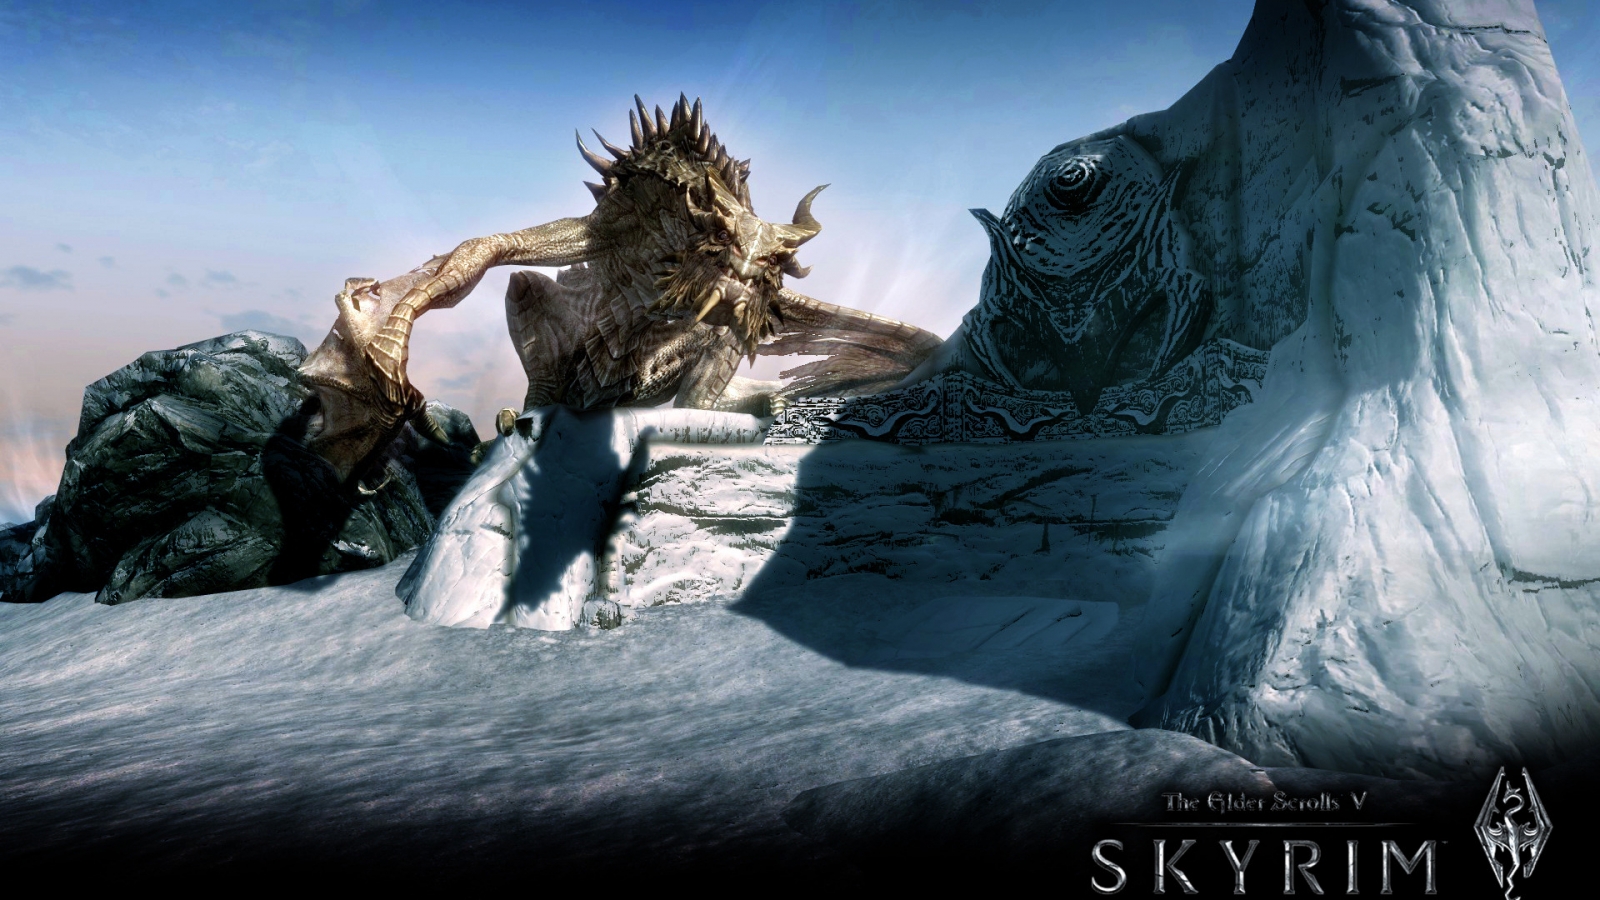 Skyrim The Elder Scrolls V for 1600 x 900 HDTV resolution